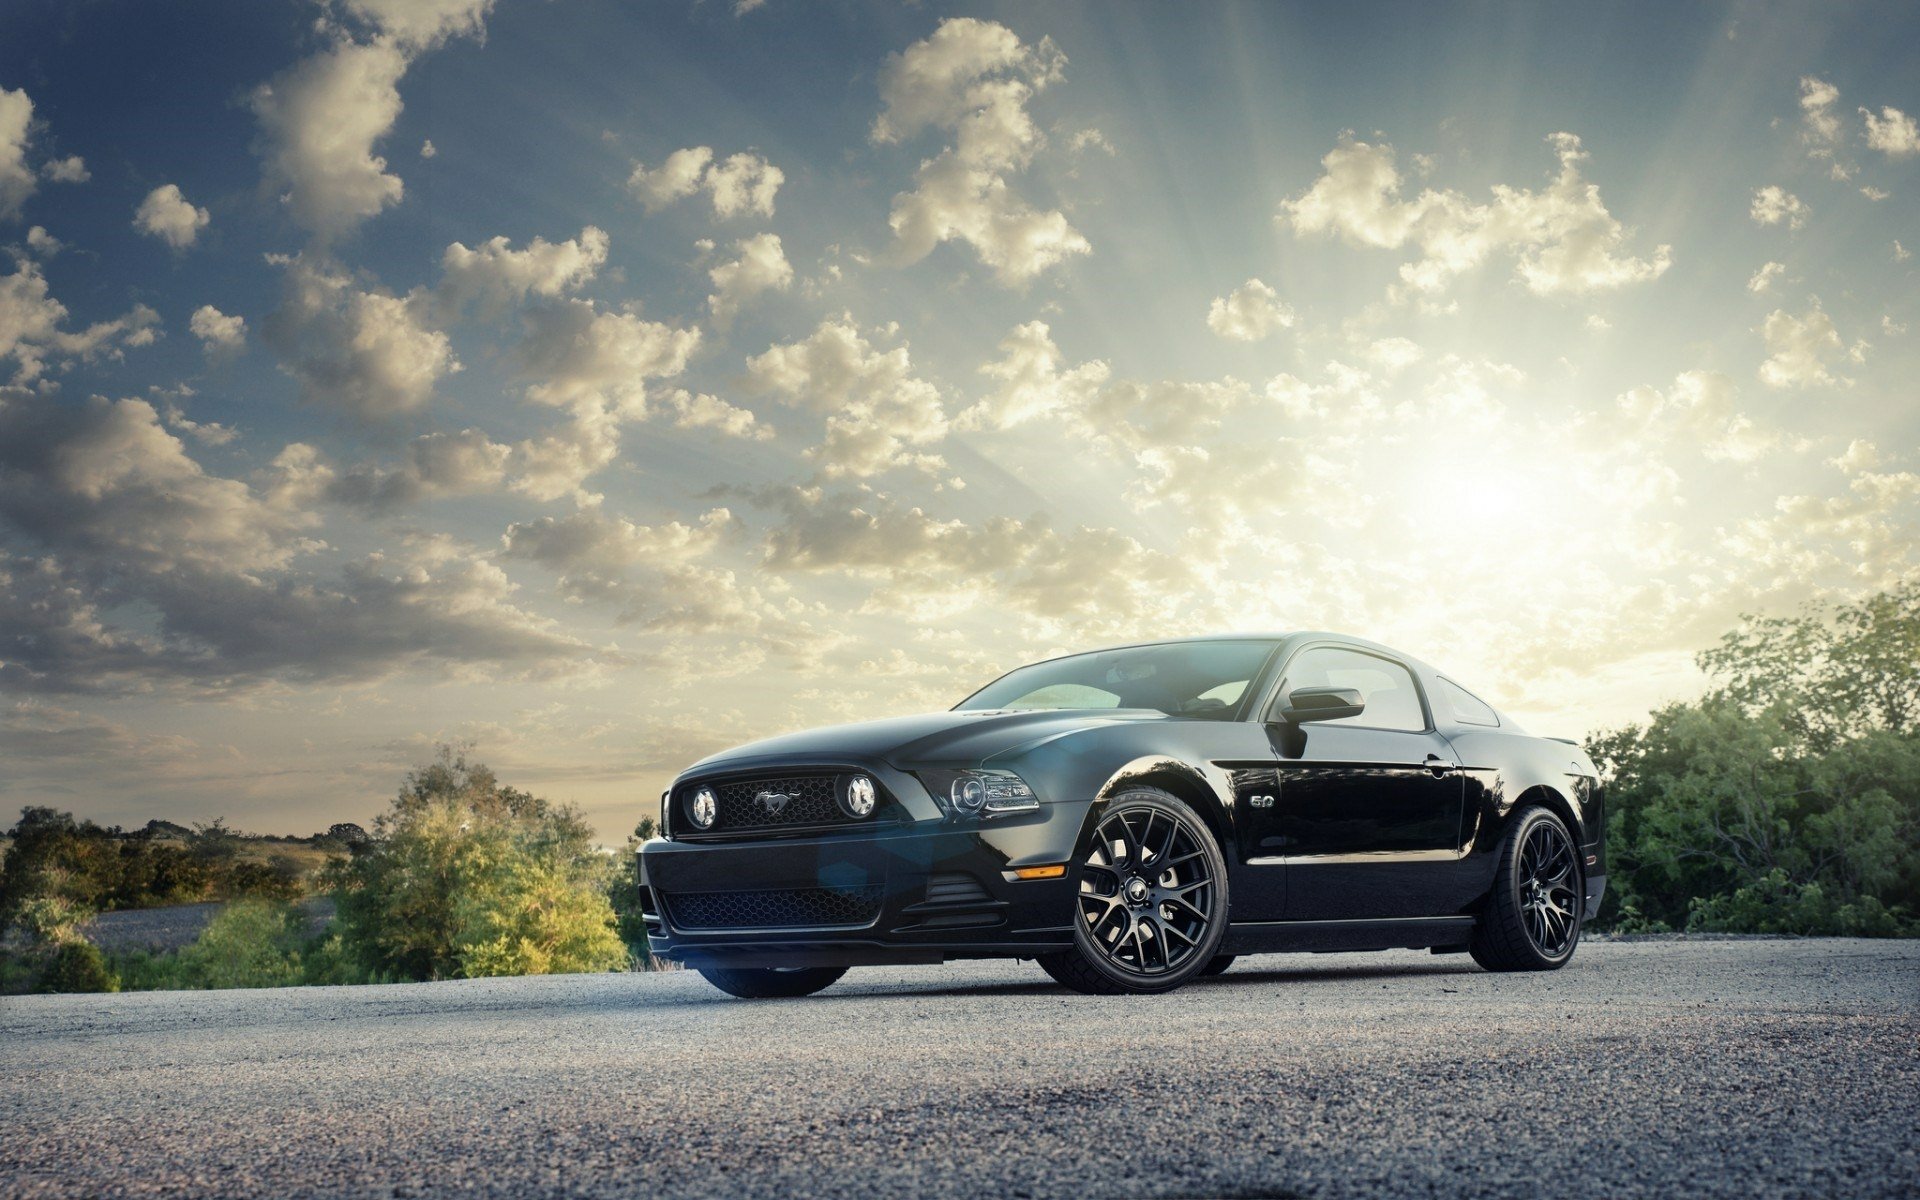 Với thương hiệu Ford Mustang, bạn sẽ được trải nghiệm sự đam mê về xe hơi truyền thống. Những chiếc xe đầy mạnh mẽ và cổ điển sẽ khiến cho bạn ấn tượng mạnh mẽ. Tạo cảm giác lịch lãm cho chiếc điện thoại của bạn với những hình ảnh Ford Mustang đẹp mắt này.